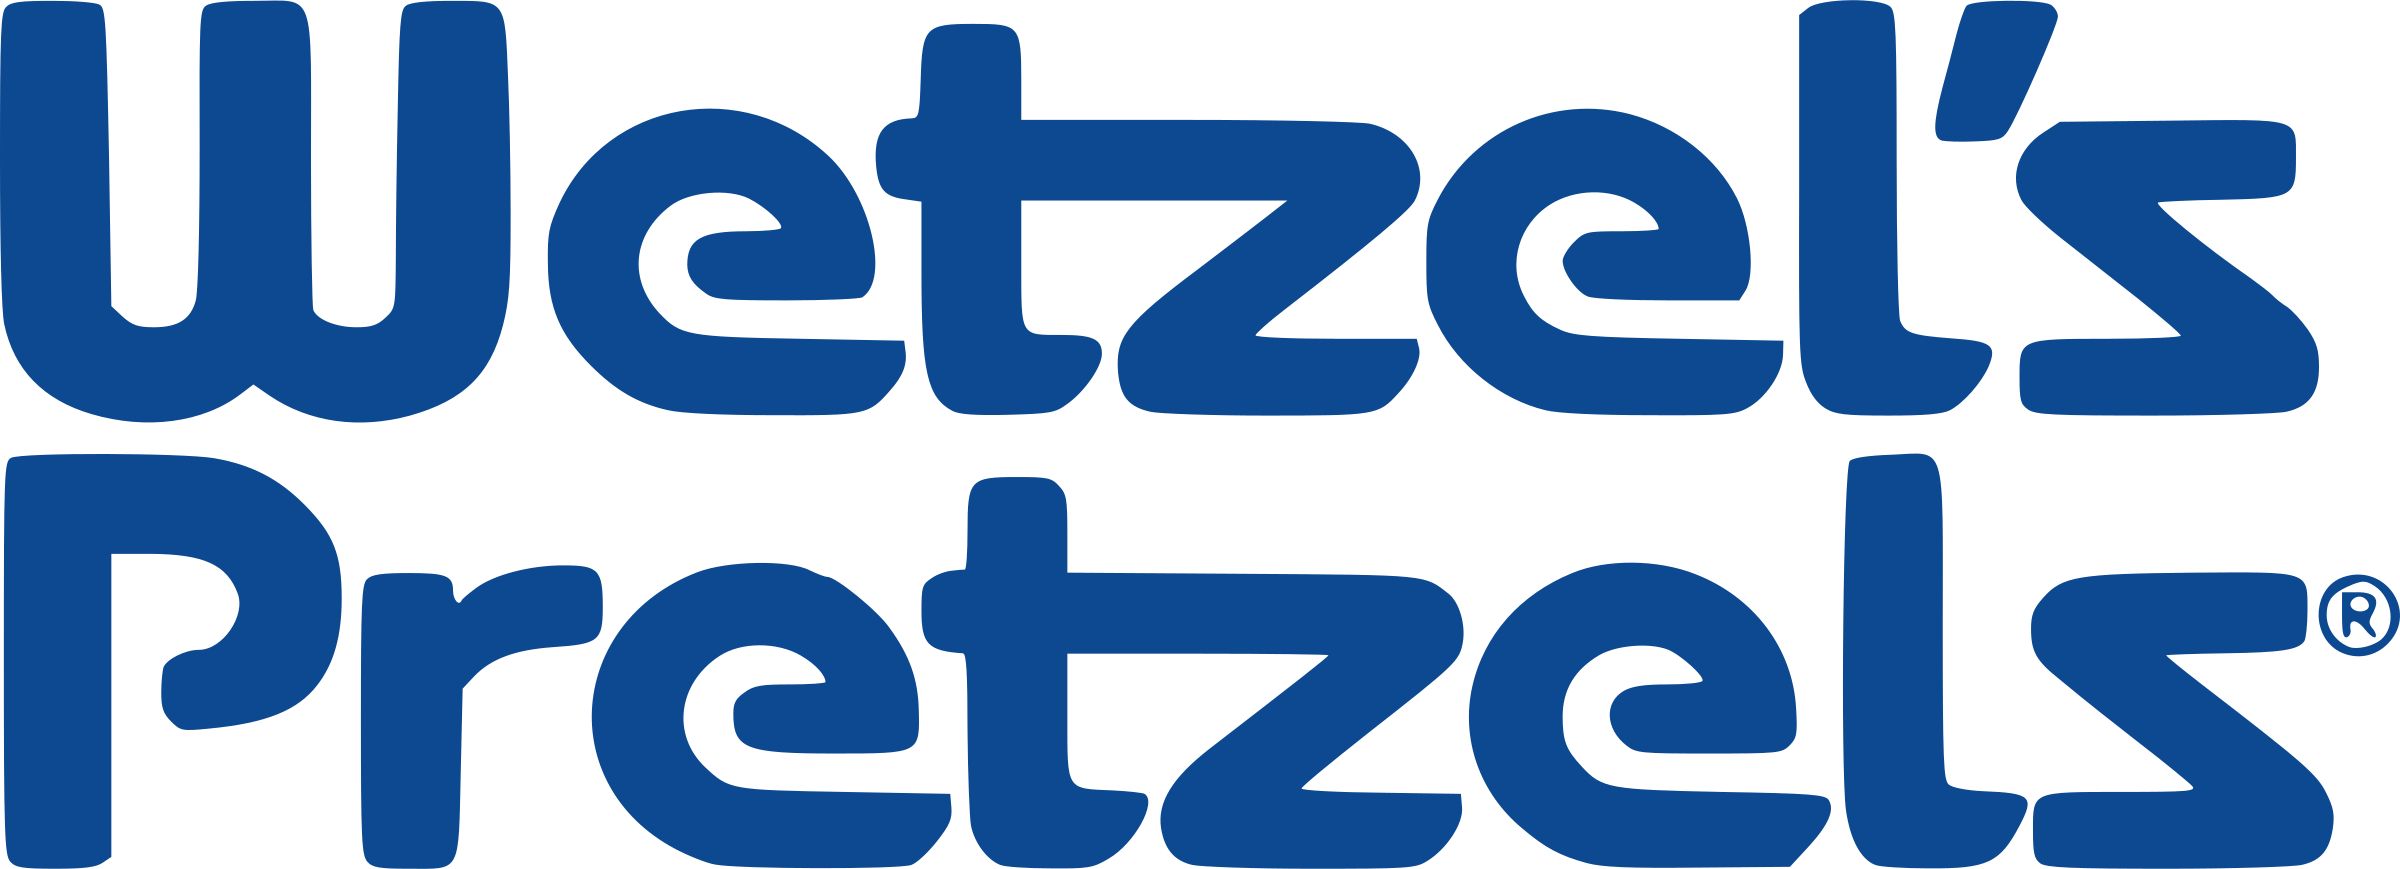 Wetzel's Pretzels Logo Png Transparent - Fête De La Musique Clipart (2400x869), Png Download